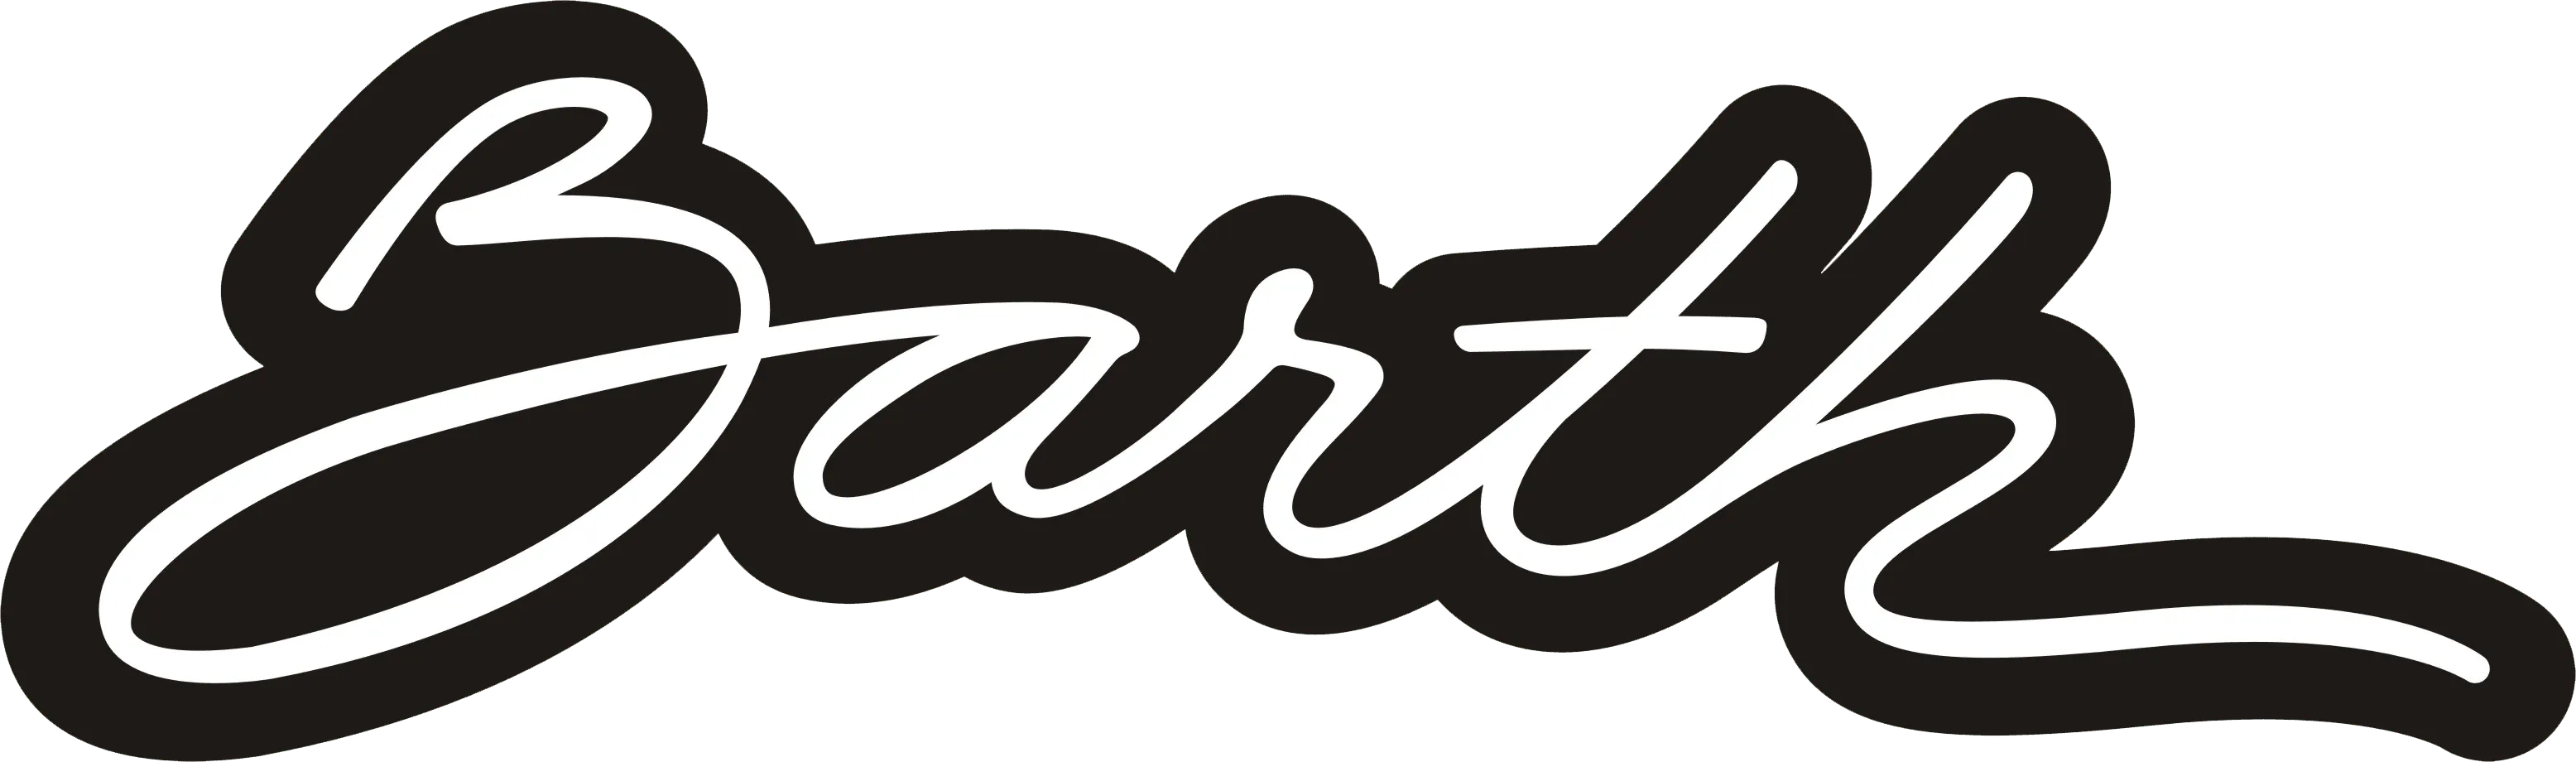 logo-barthshoes-assinada-2